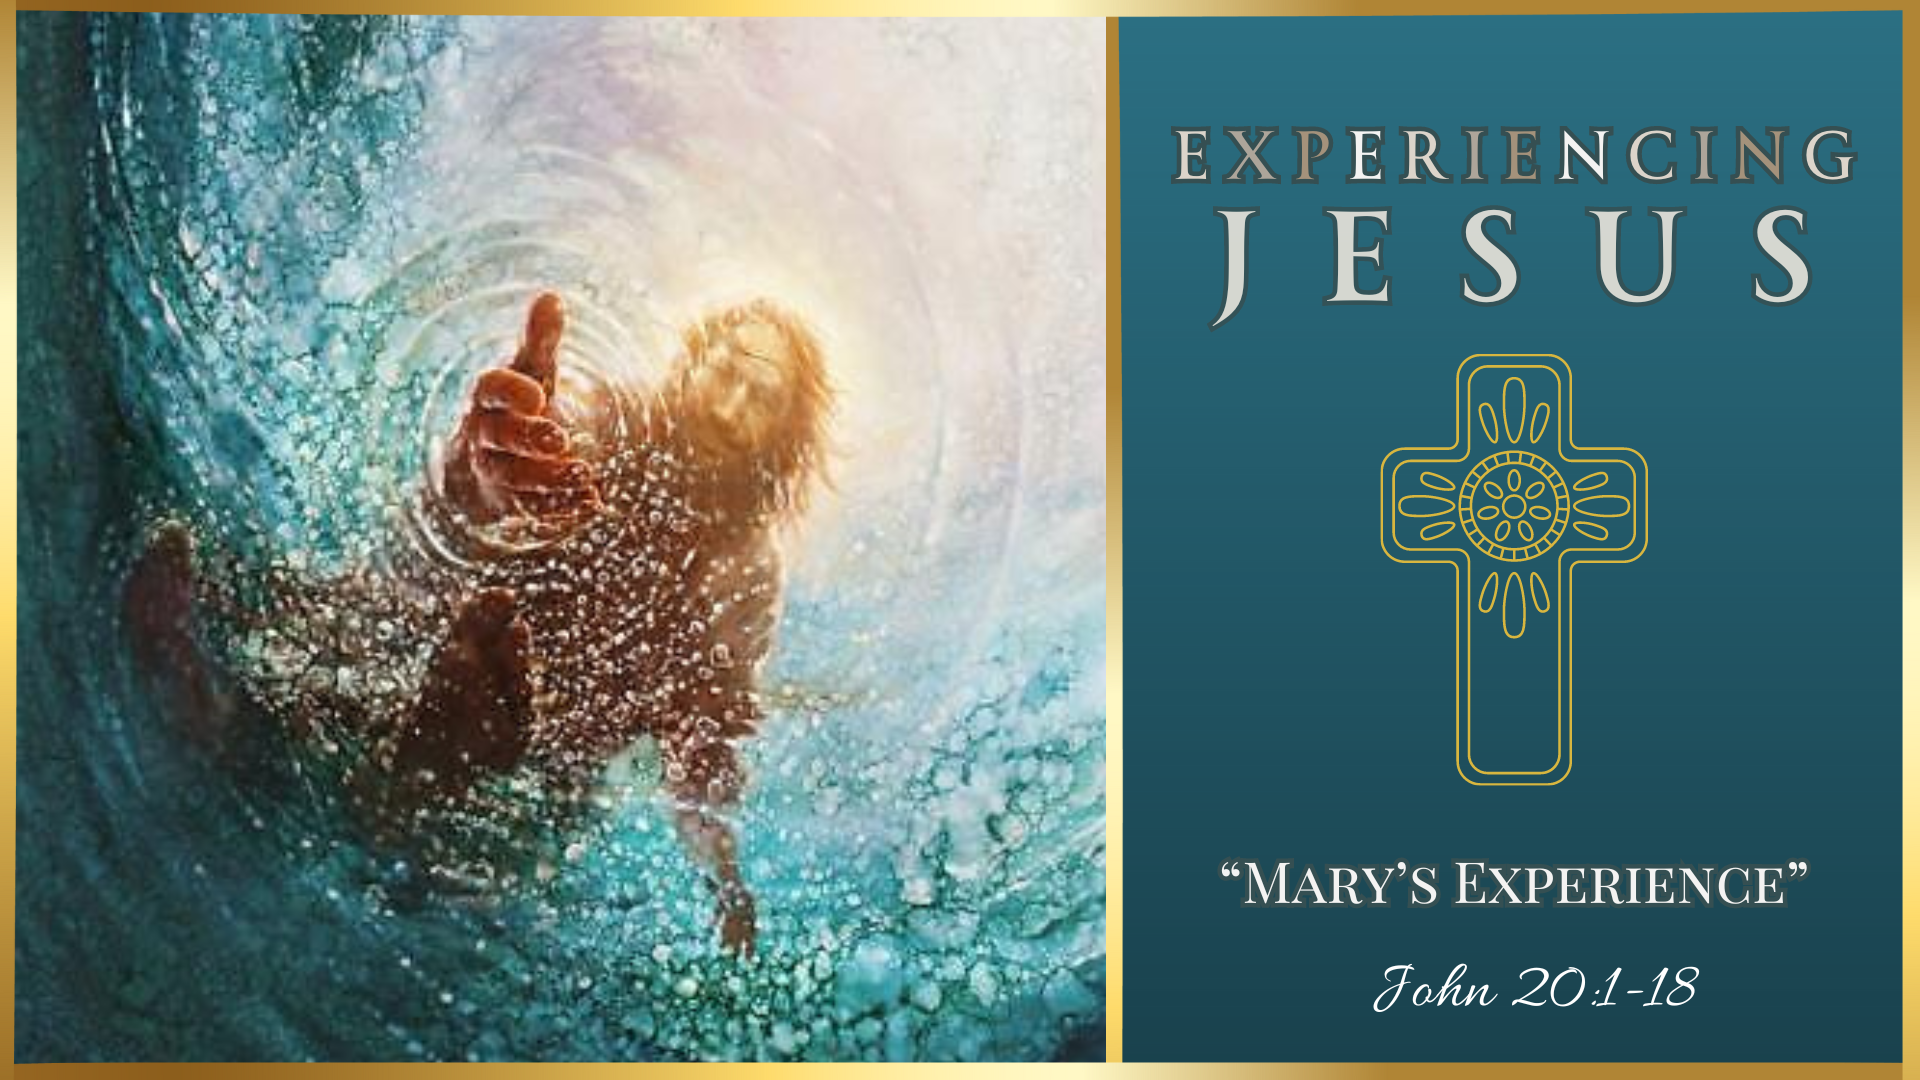 Mary’s Experience